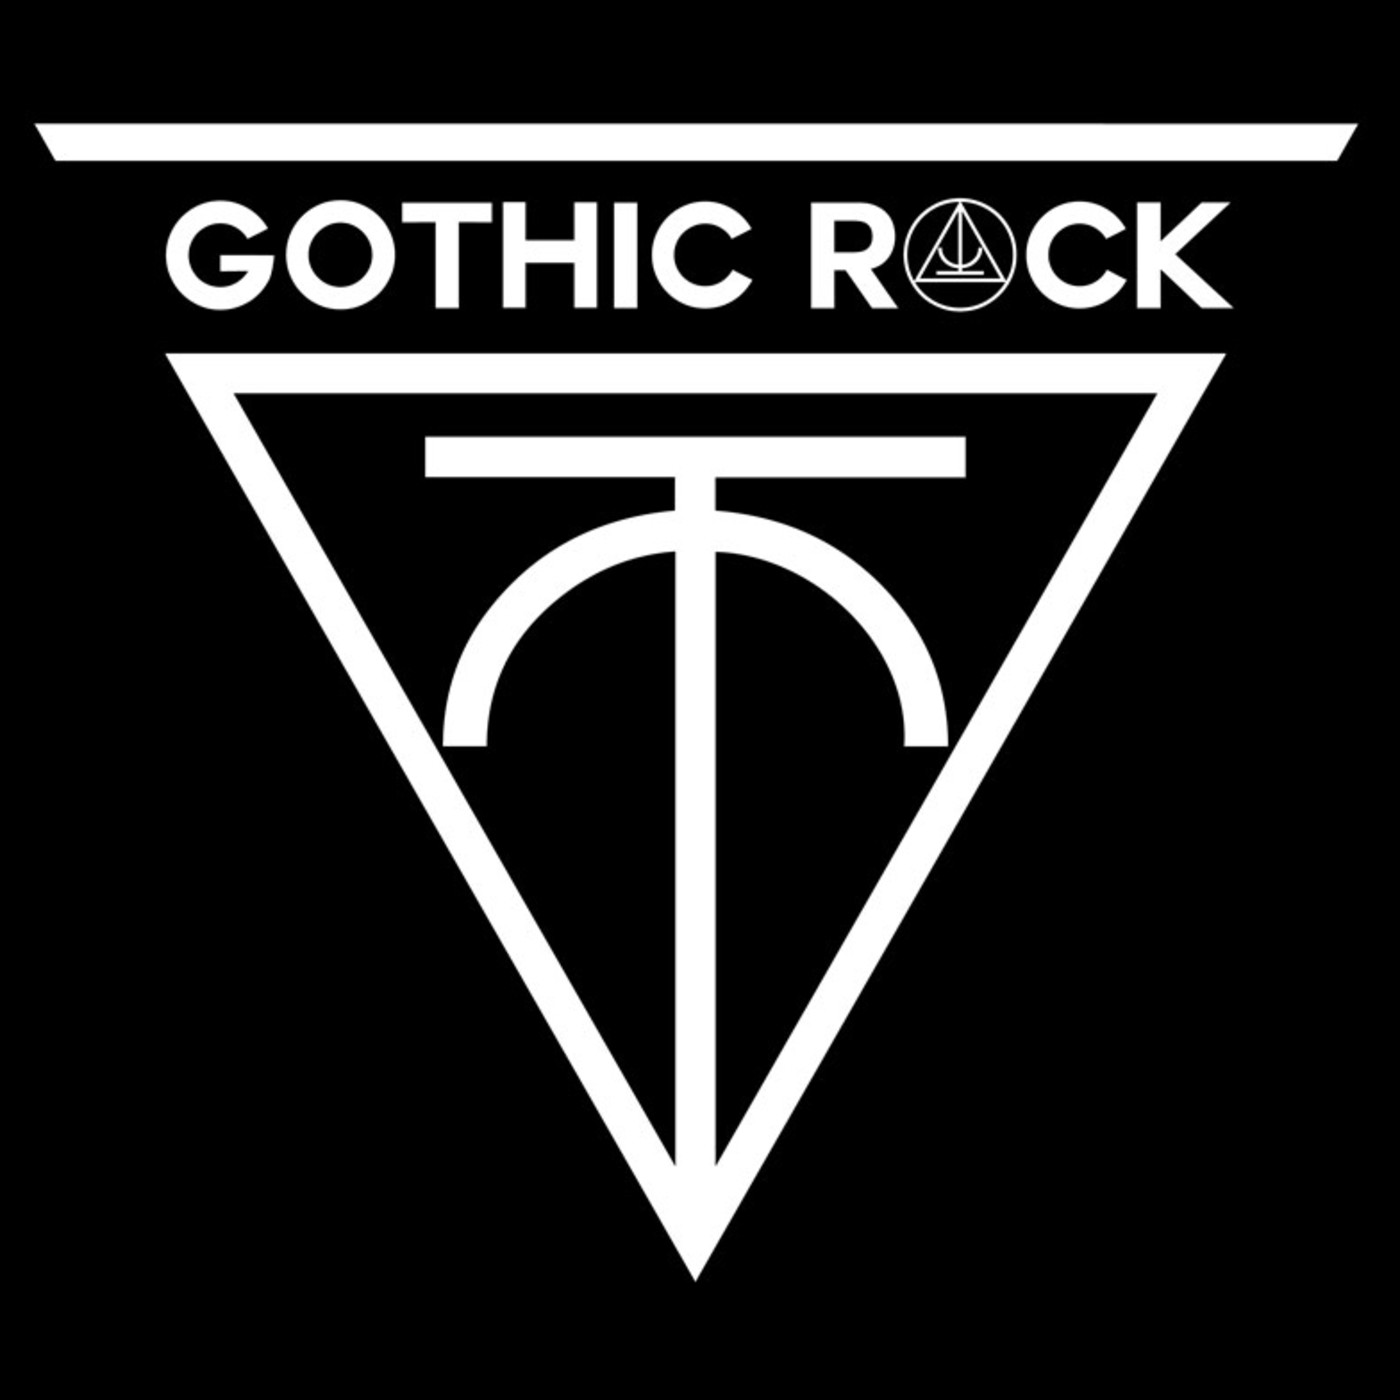 Gothic Rock EP37 (02/09/17)